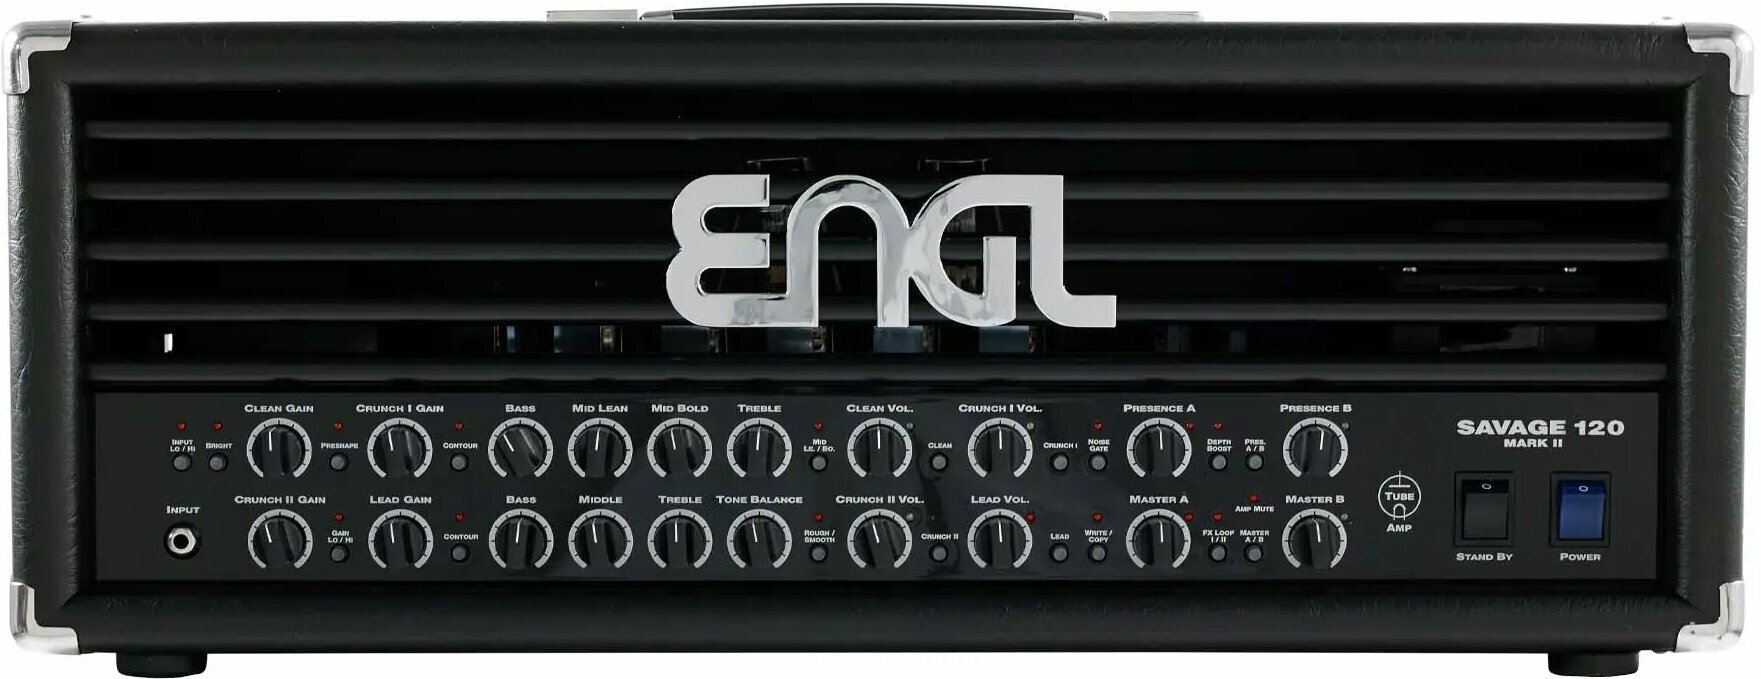 Amplificador a válvulas Engl E610II Savage 120 MARK II